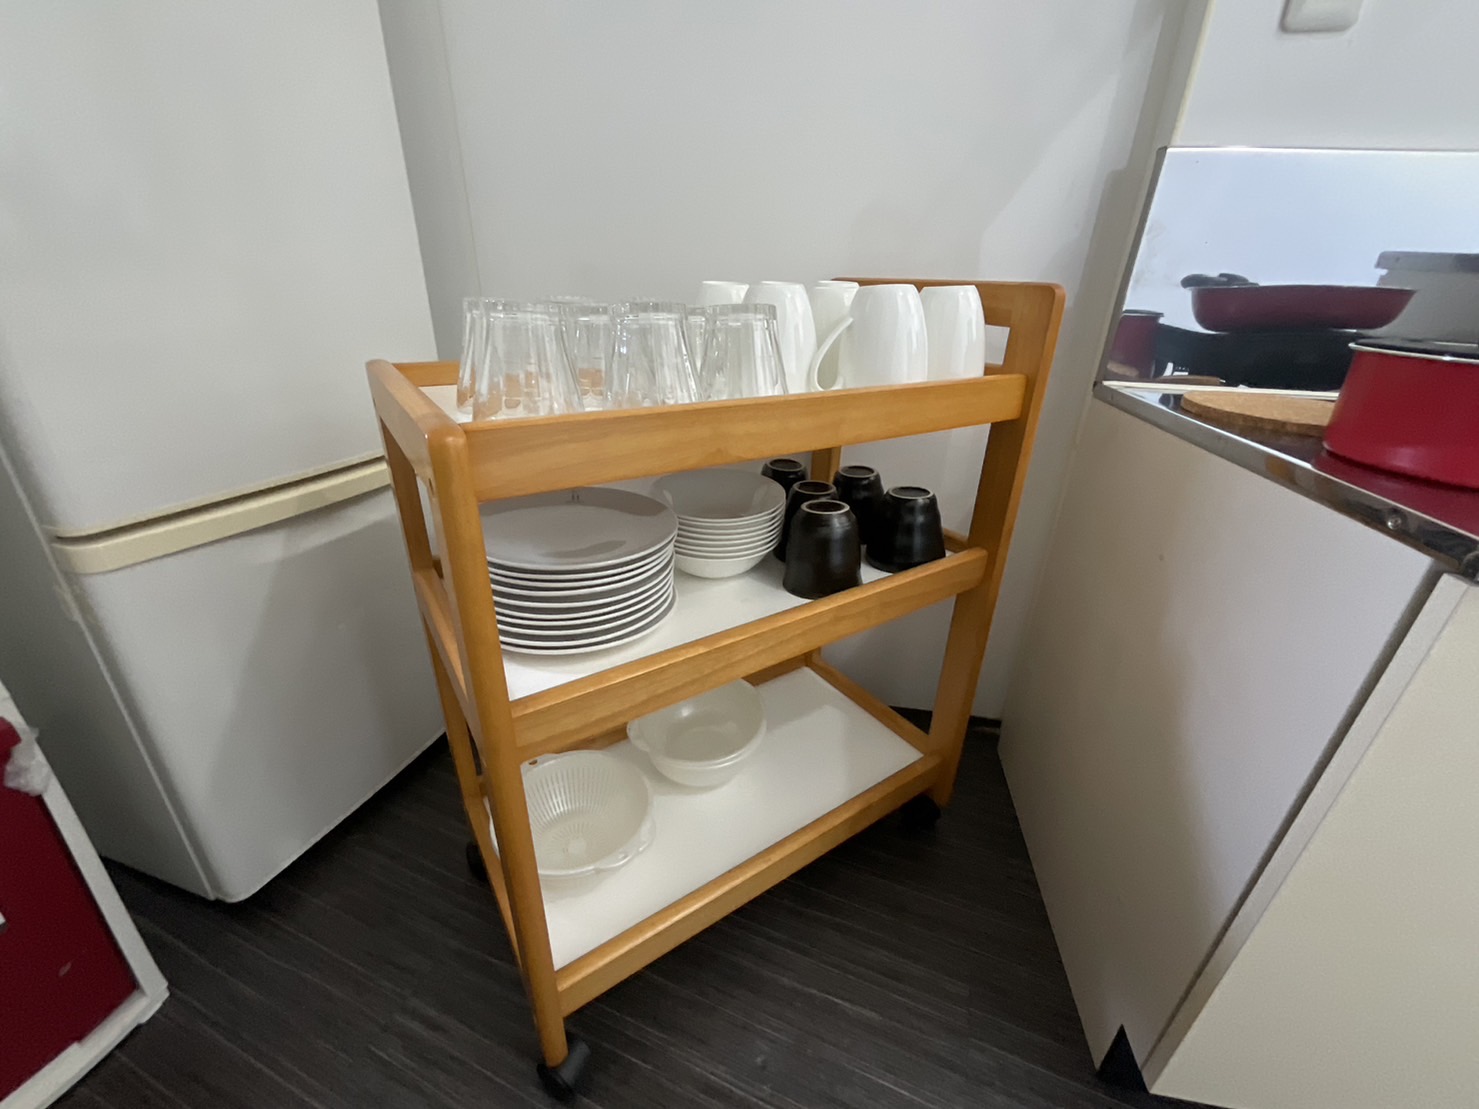 2階キッチン、食器類と調理器具